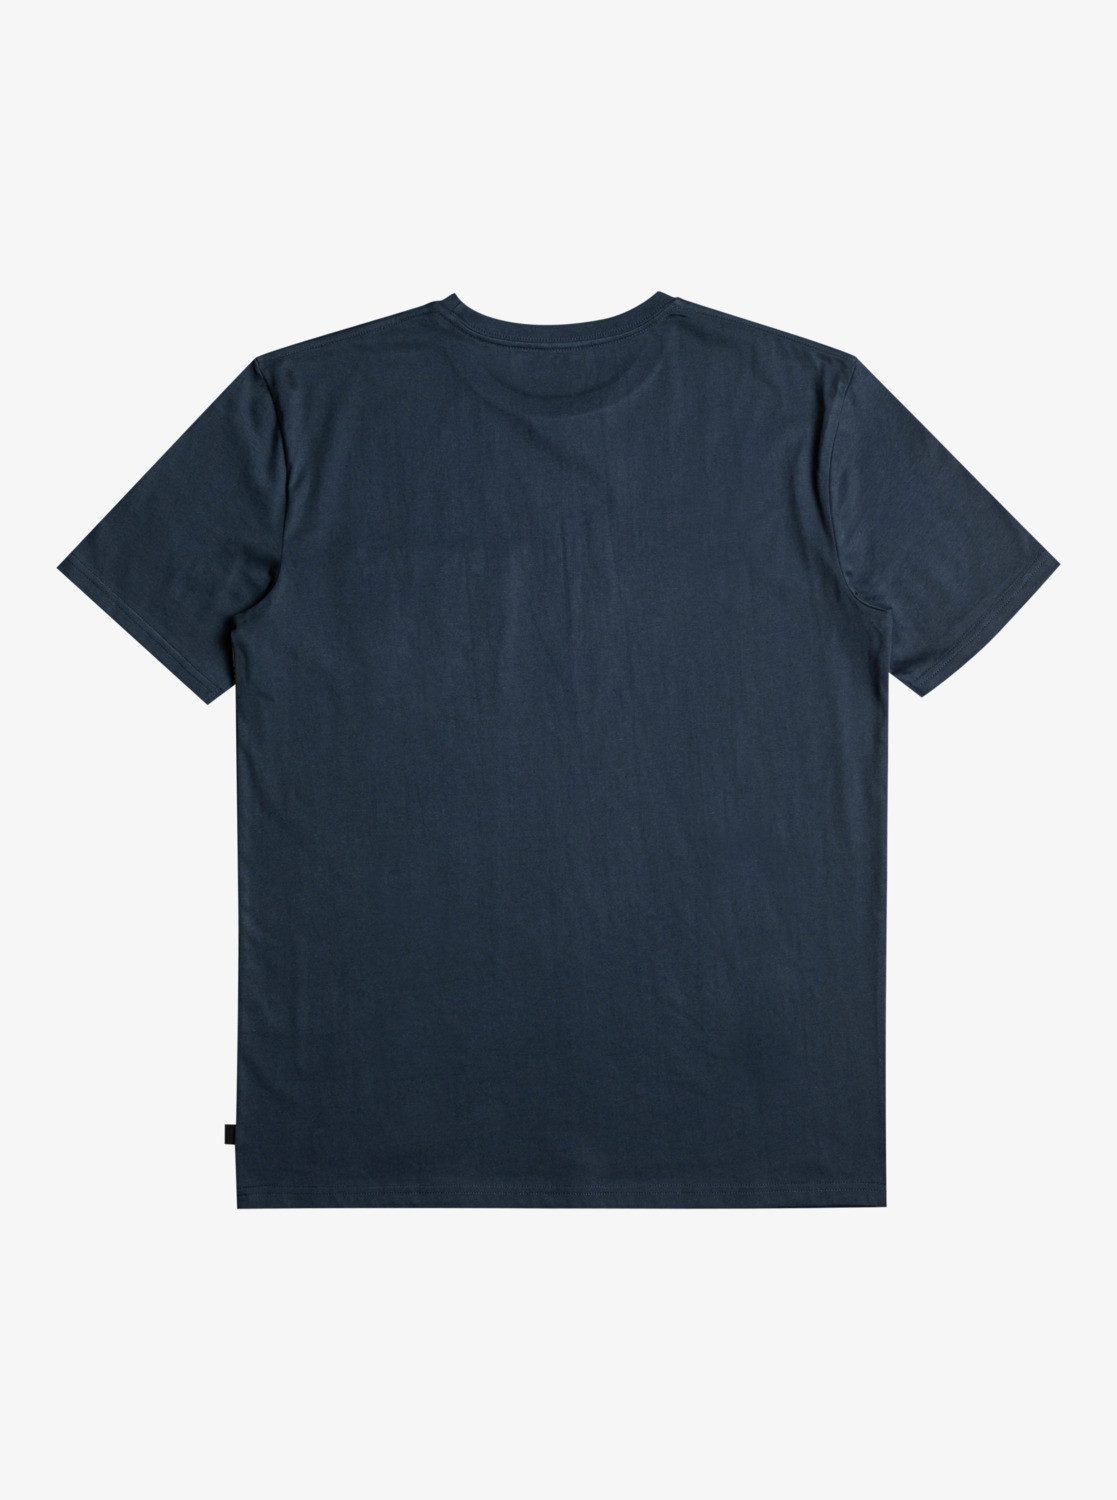 Navy T-Shirt Blazer Quiksilver Stripe Surfadelica